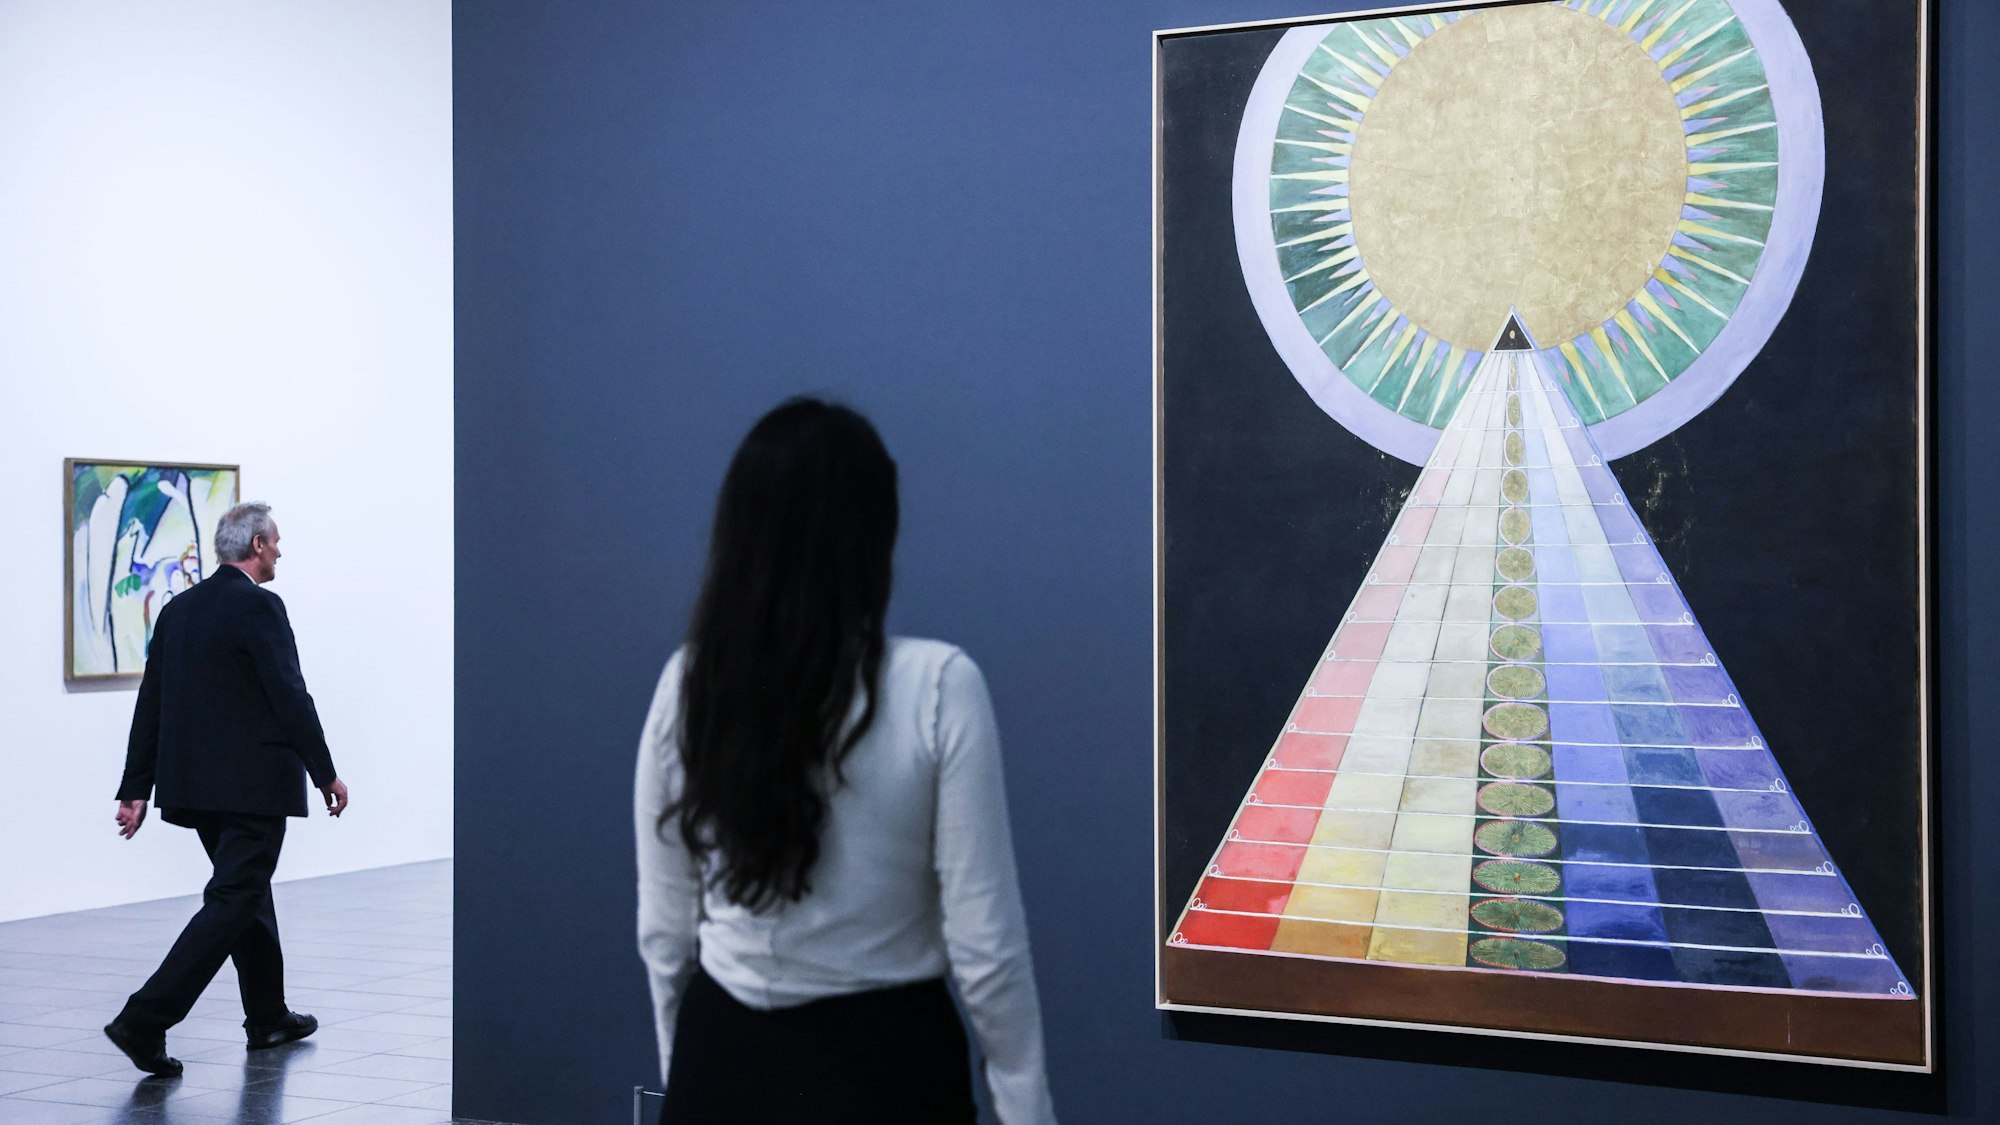 Eine Ausstellungsbesucherin betrachtet das Gemälde ·Altarbild· von Hilma af Klint.